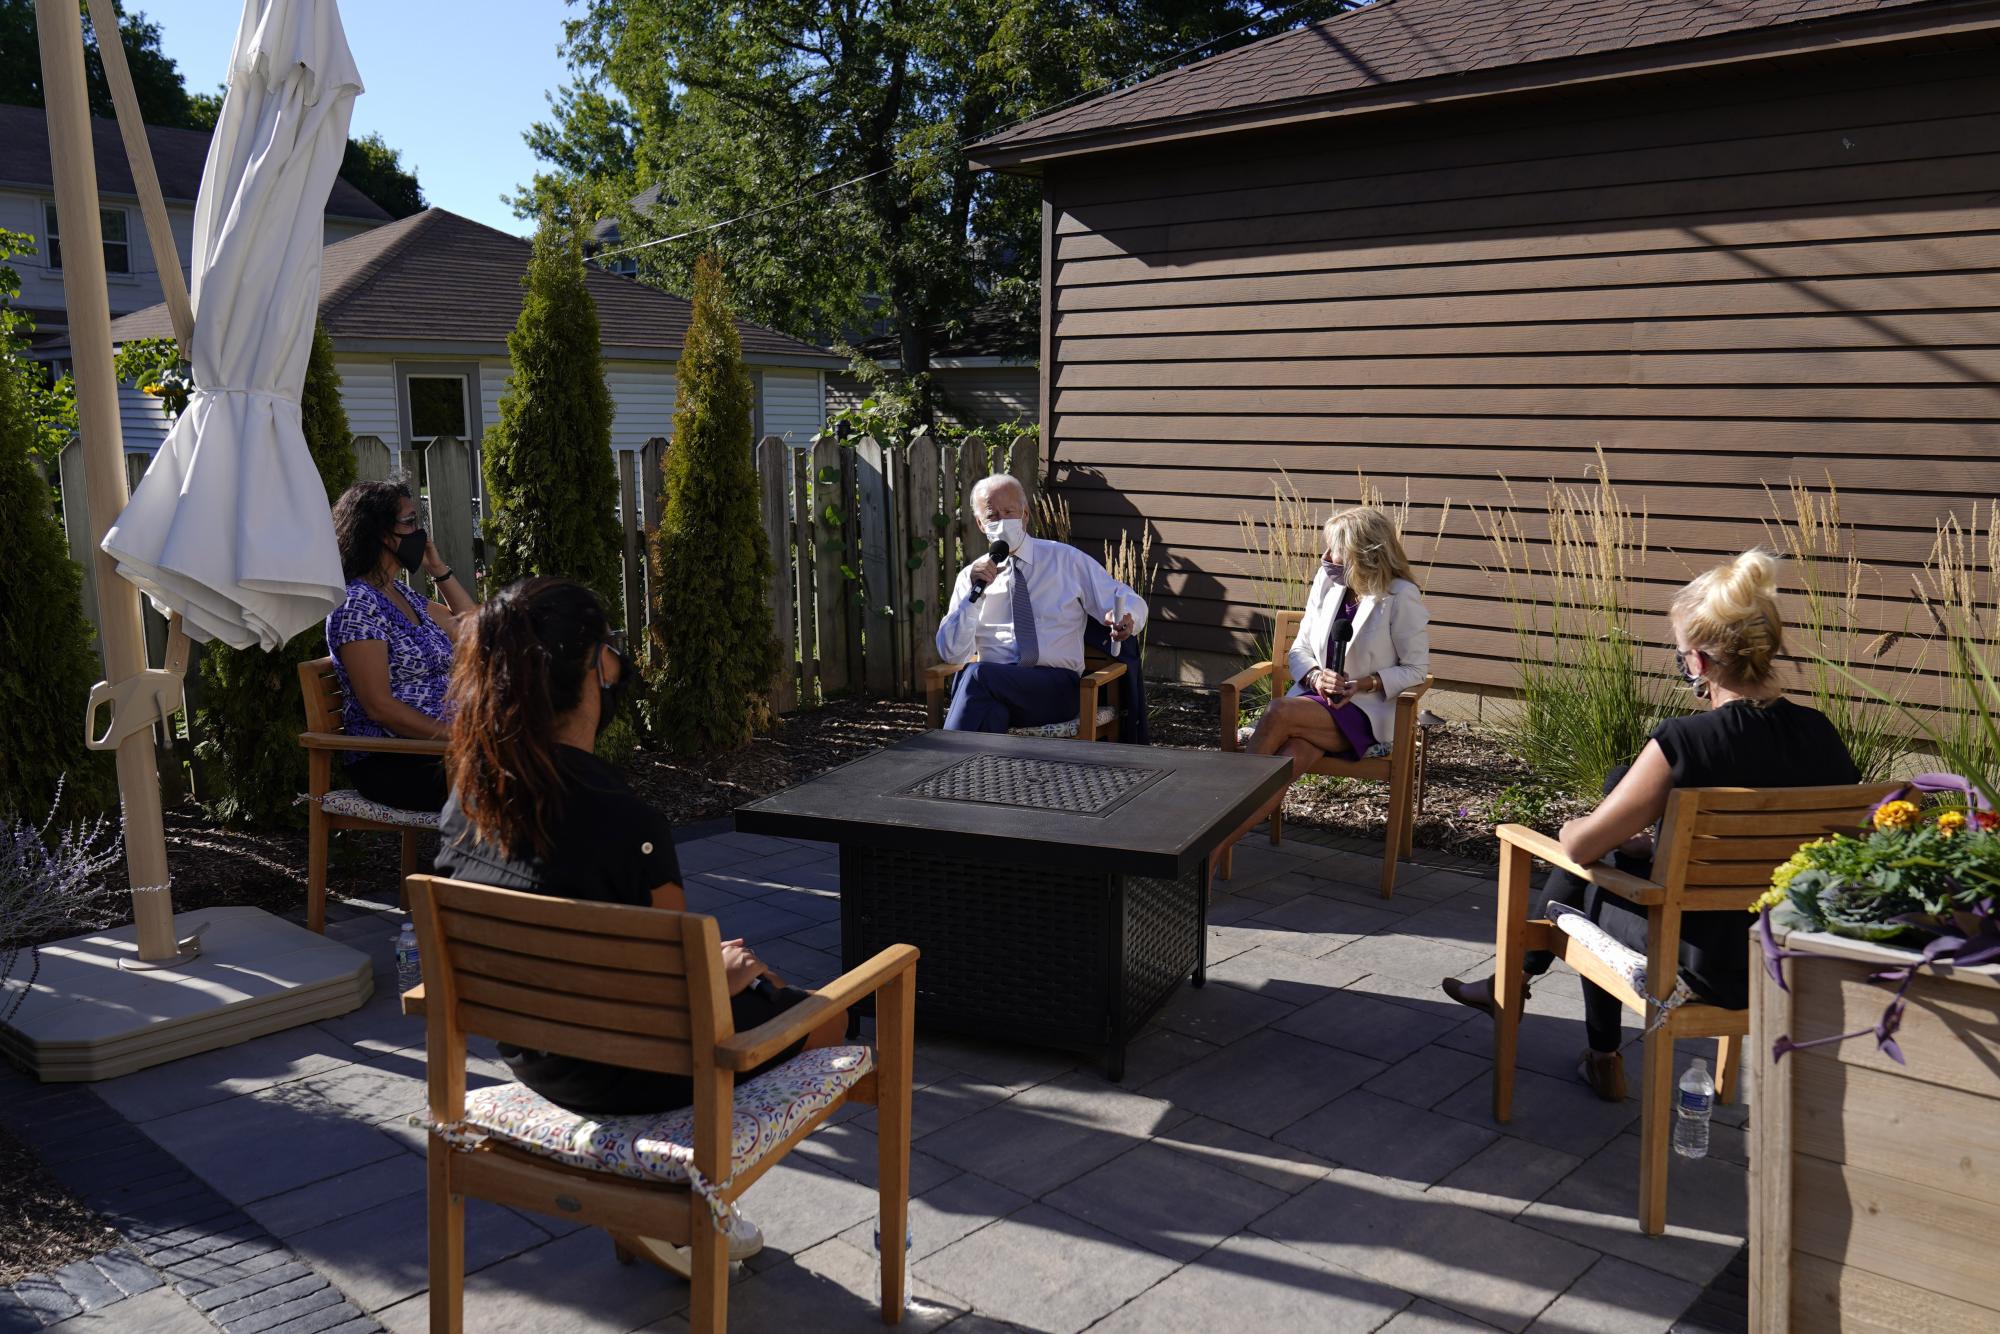 El candidato por el Partido Demócrata, Joe Biden, se reúne en el patio de un casa en Wauwatosa, Wisconsin, para discutir el tema del regreso a clases (AP Photo/Carolyn Kaster)